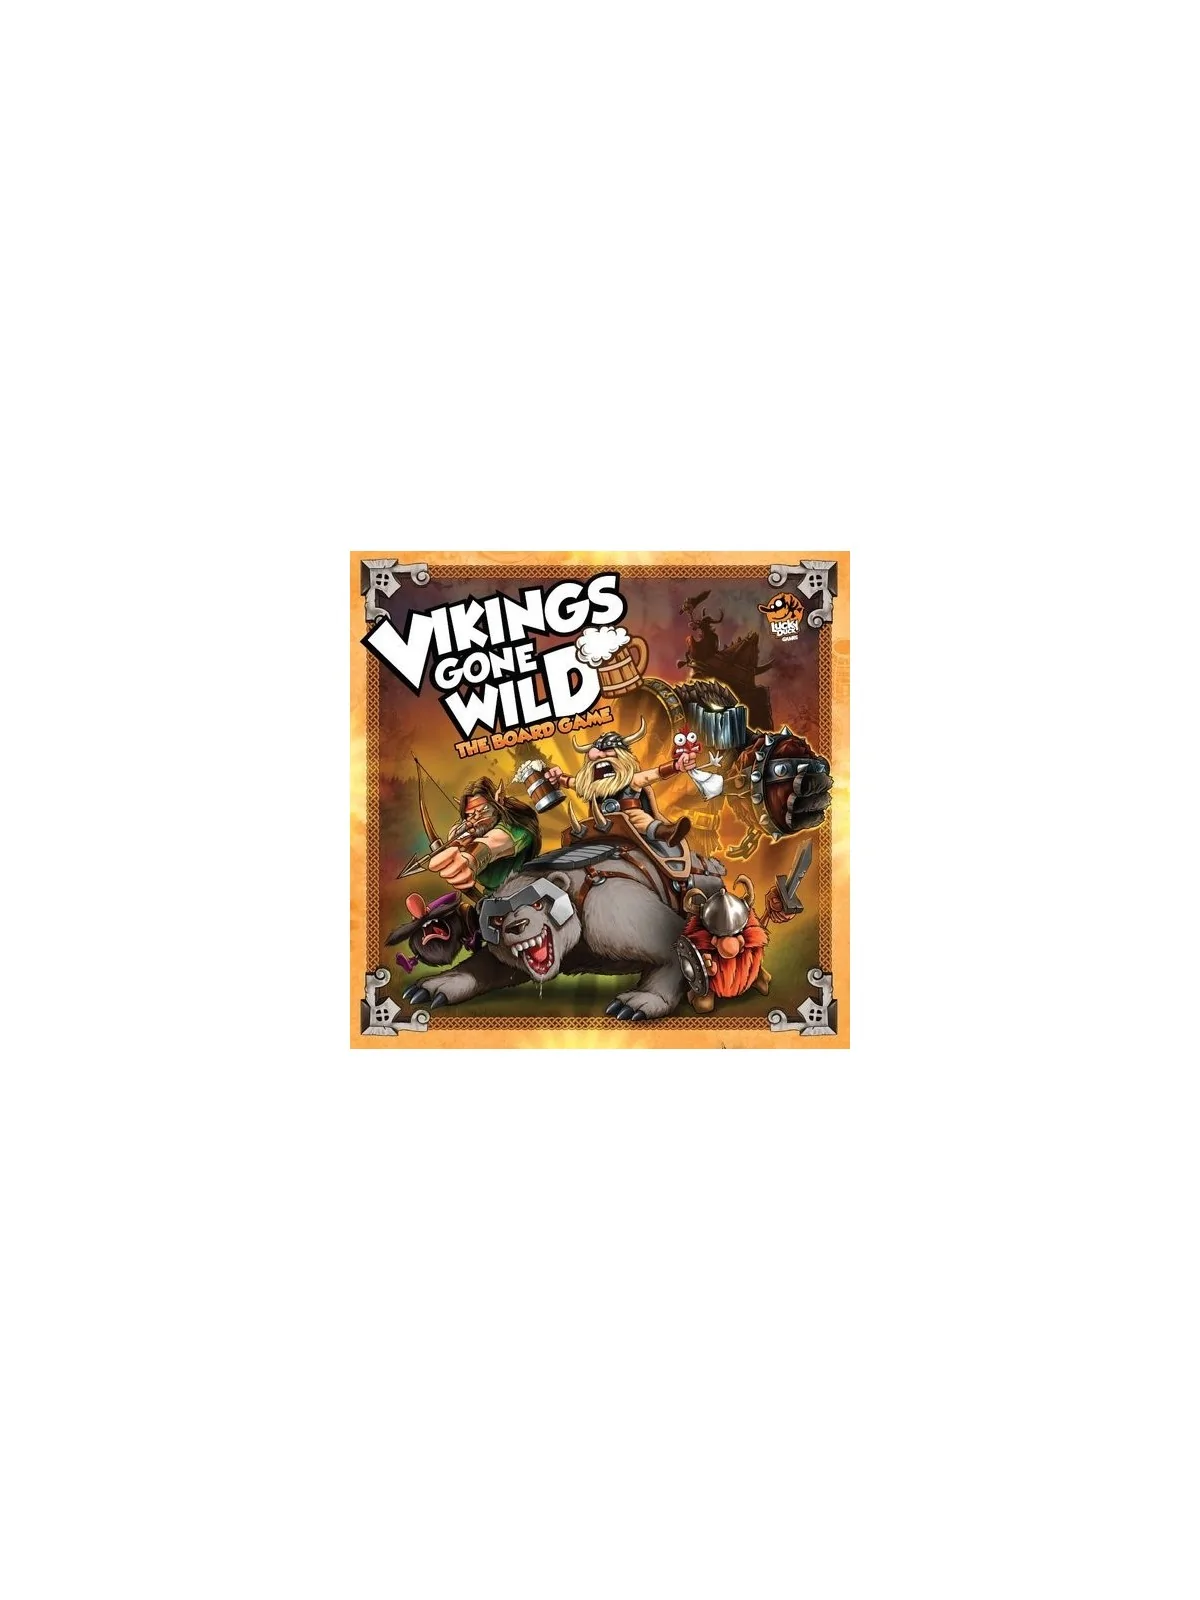 Comprar Vikings Gone Wild Básico barato al mejor precio 31,50 € de Las